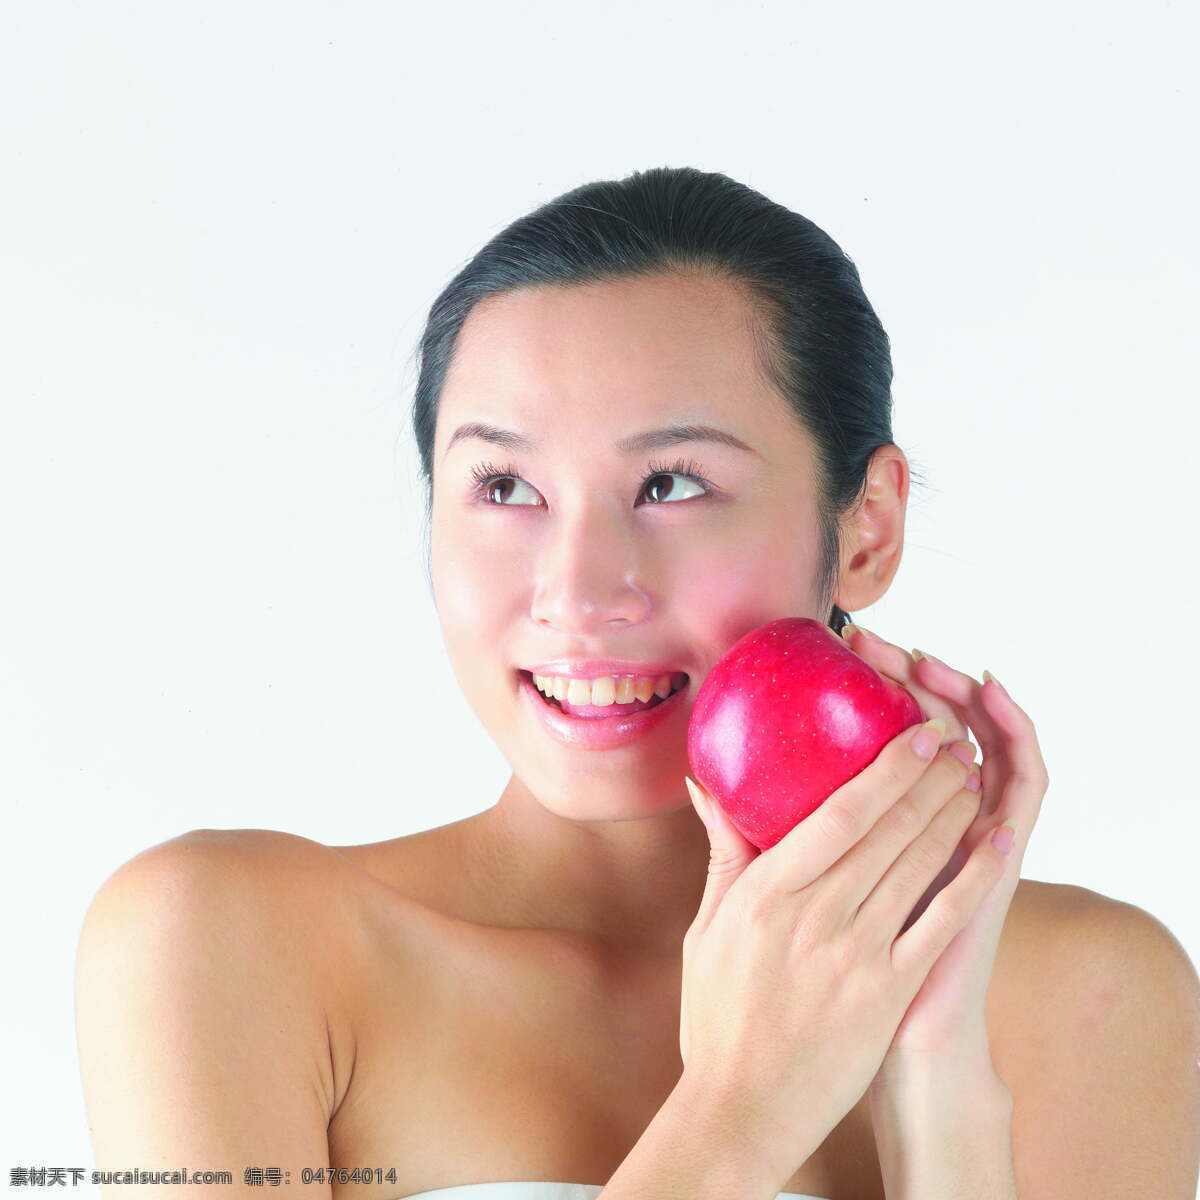 女性 健康生活 女性生活 蔬果 苹果 皮肤好 白里透红 红苹果 微笑 美女图片 人物图片